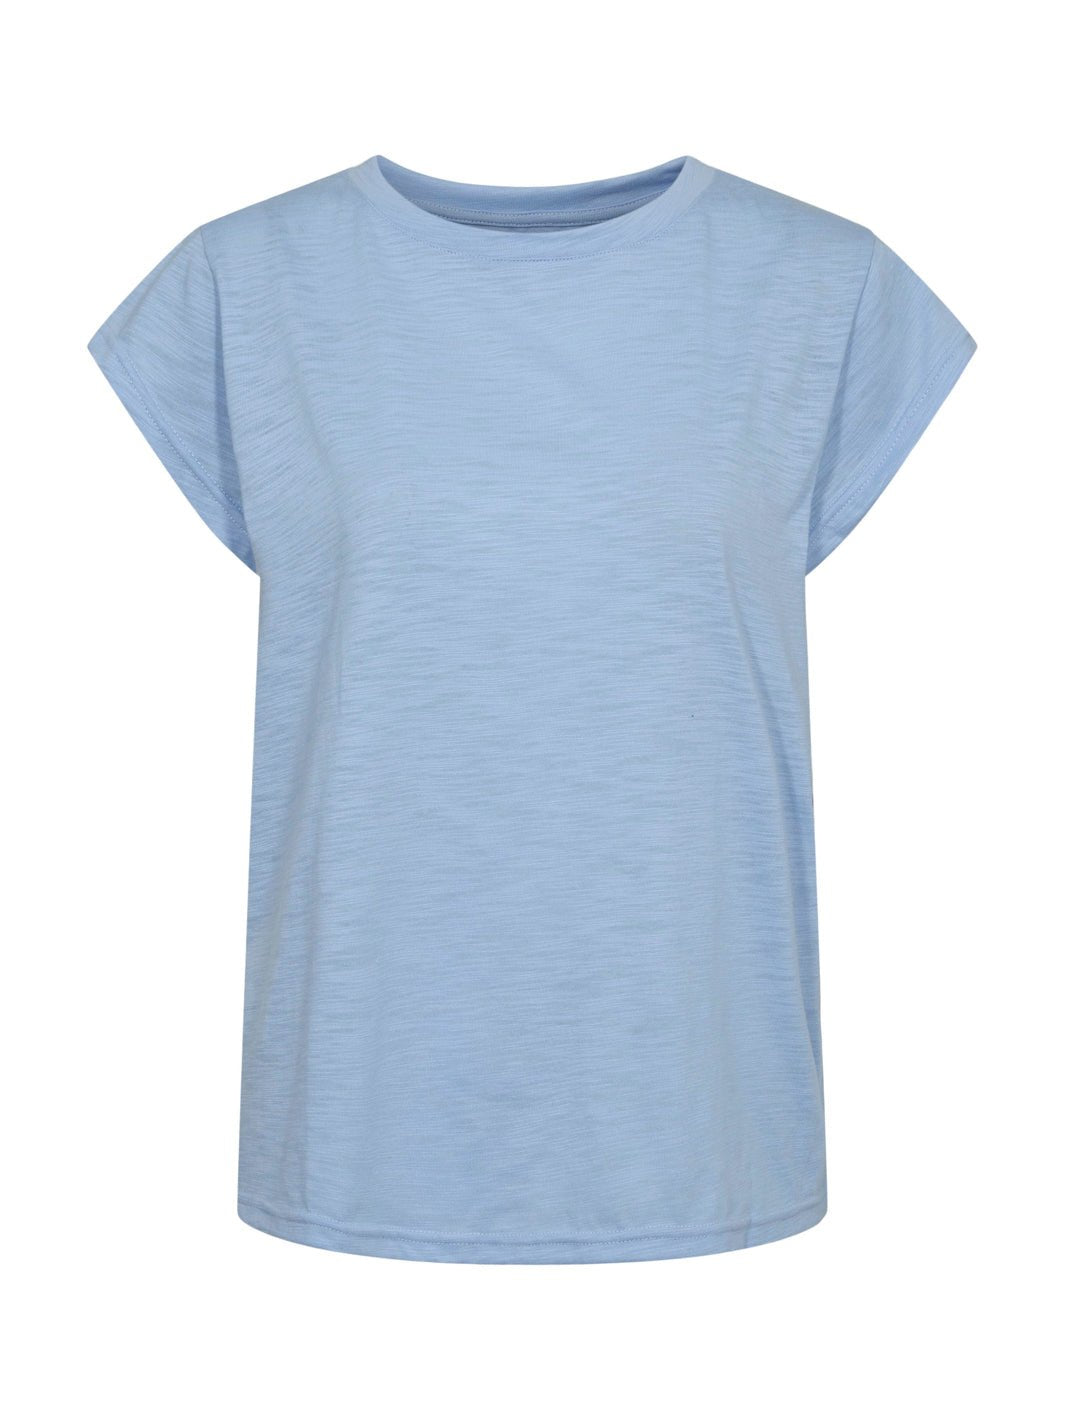 Liberté Ulla t - shirt light blue - Online - Mode